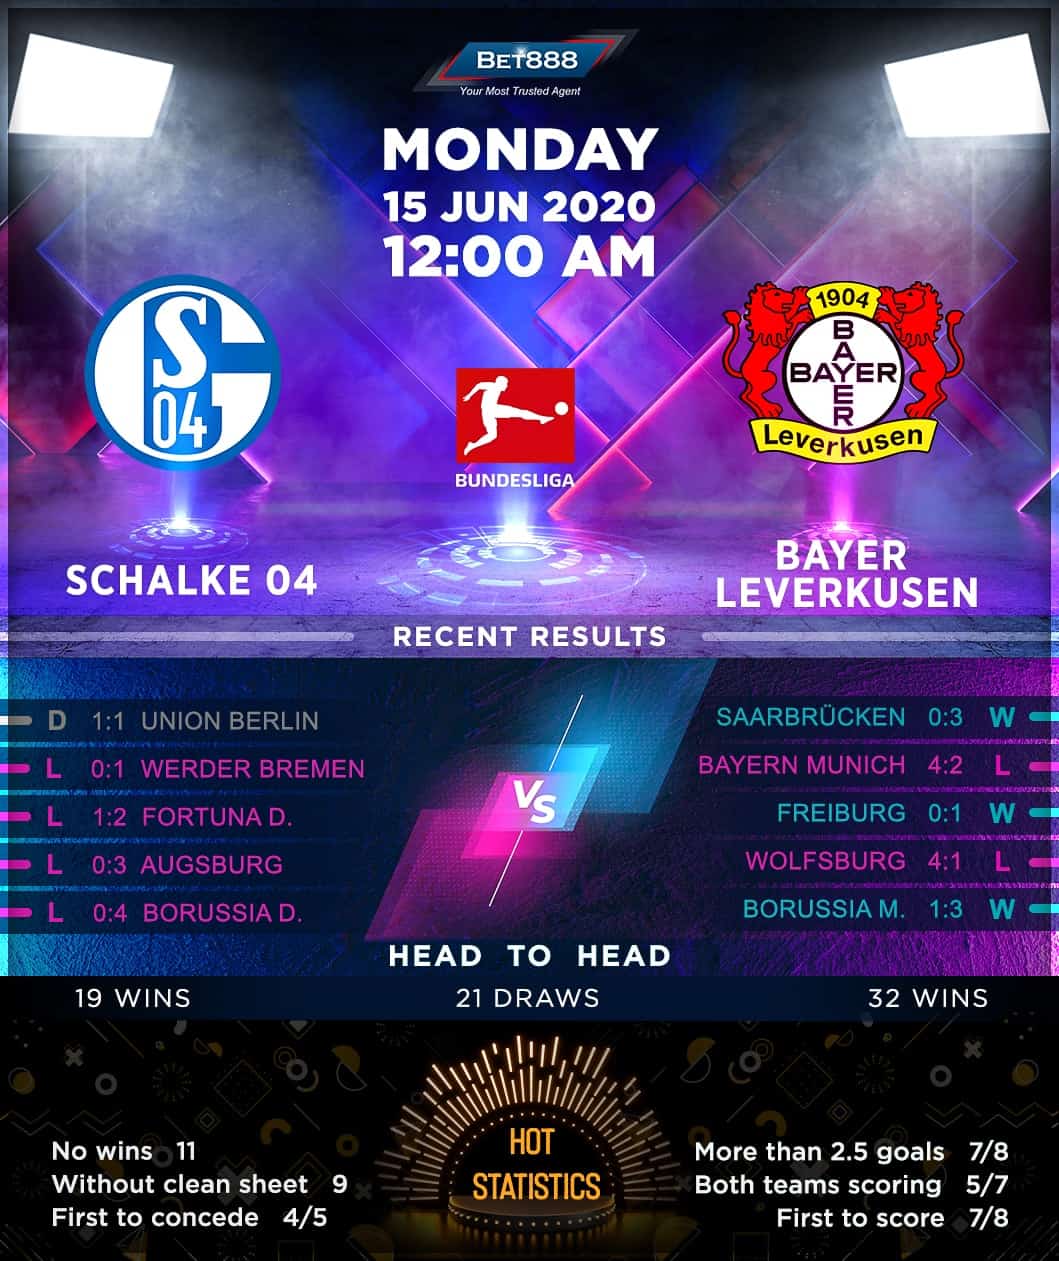 Schalke 04 vs Bayer Leverkusen 15/06/20